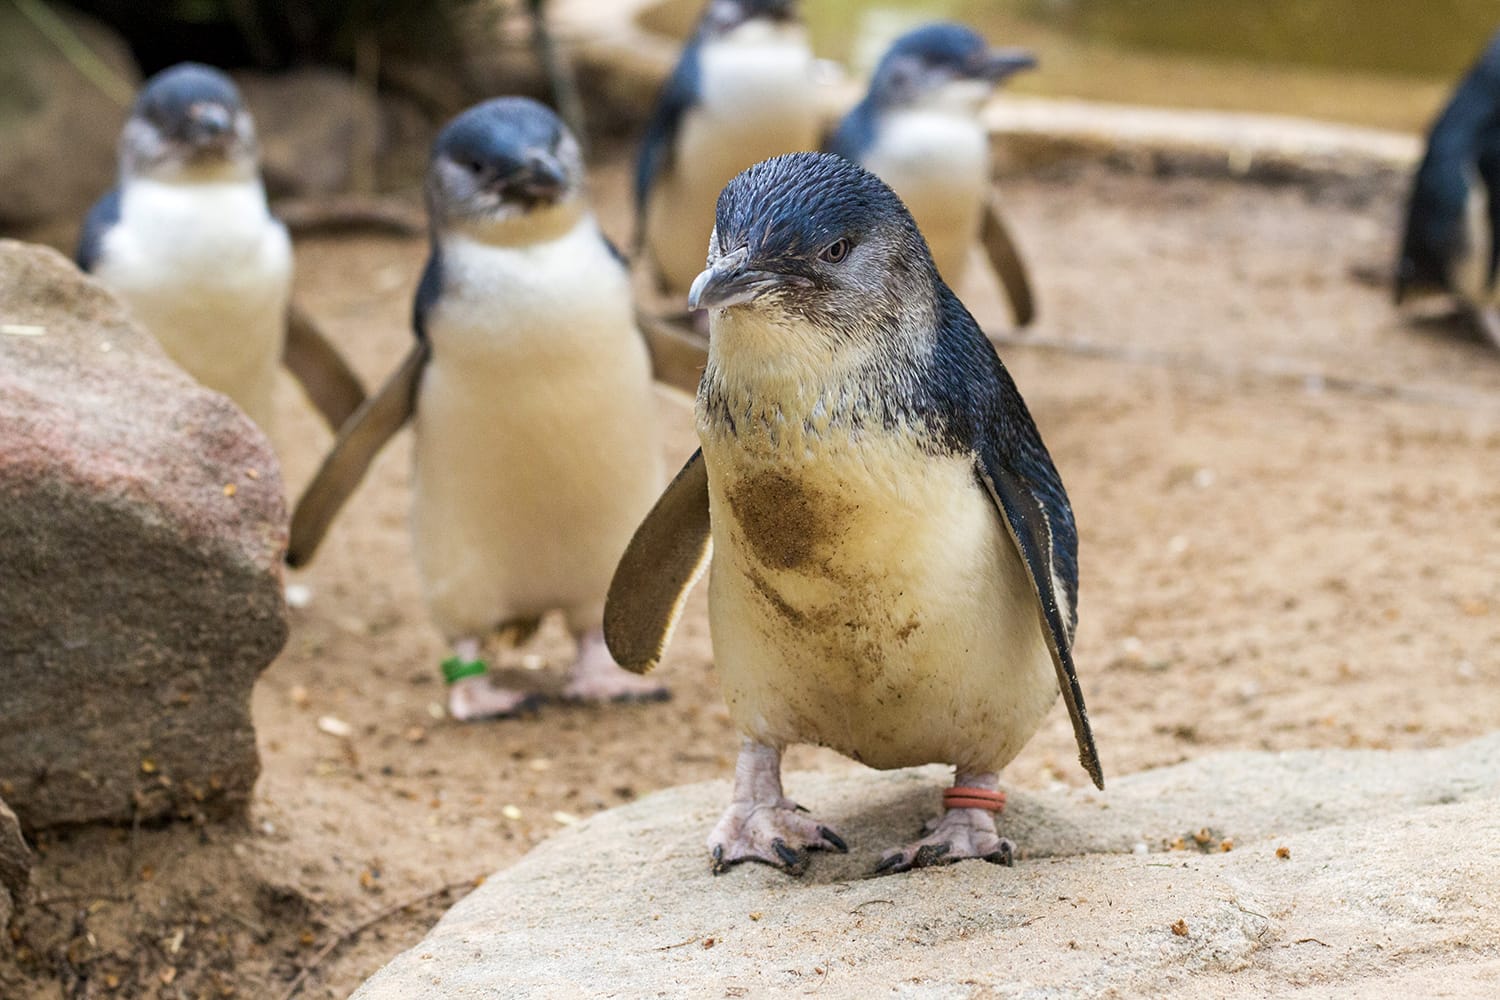 Little blue penguins in Australia